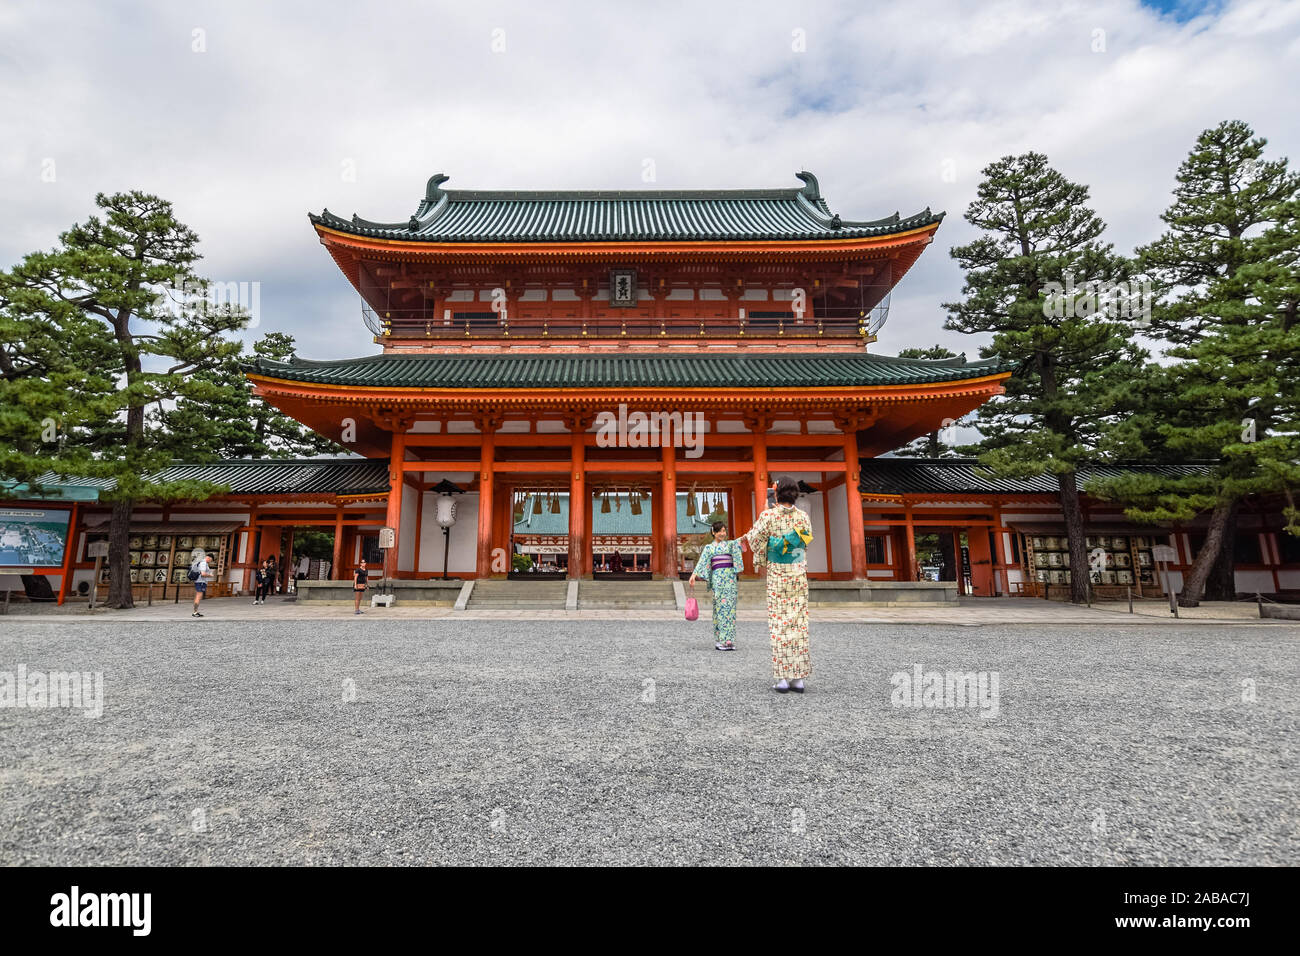 Dos jóvenes turistas asiáticos vestidos en kimonos tradicionales japoneses tomando una foto en frente del famoso Santuario Heian en Kyoto, Japón. Foto de stock